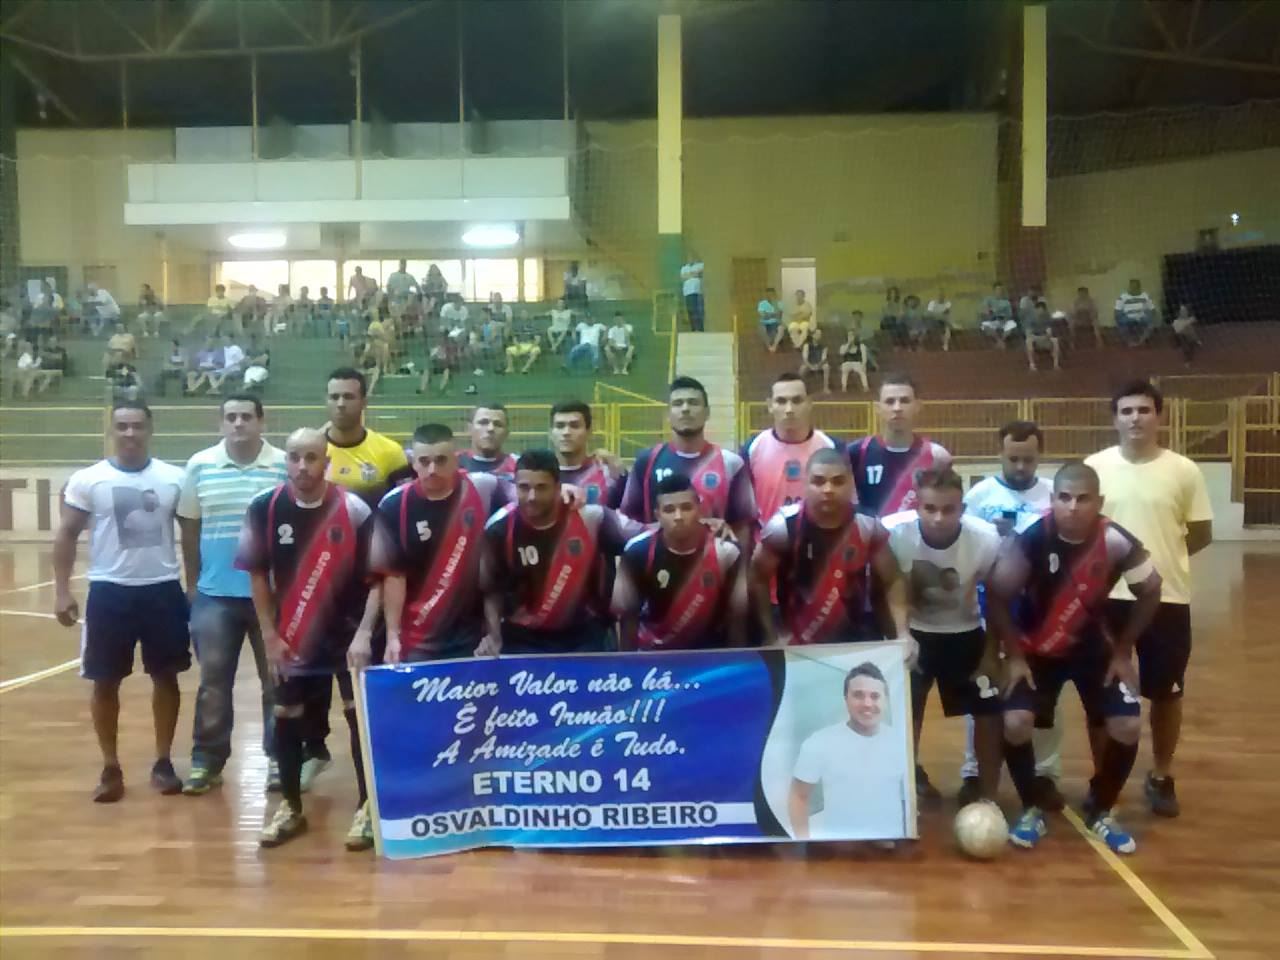 Equipe de futsal de Pereira Barreto presta homenagem ao ex-atleta da equipe, Osvaldo Ribeiro, morto em um acidente de carro